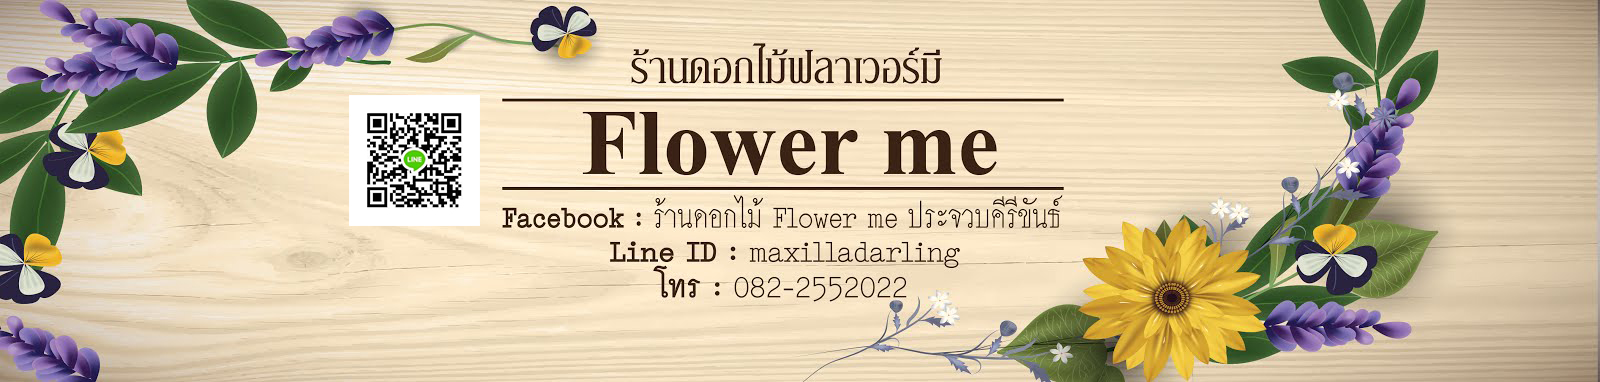 ร้านดอกไม้ฟลาเวอร์มี flowerme ประจวบคีรีขันธ์ โทร 082-2552022